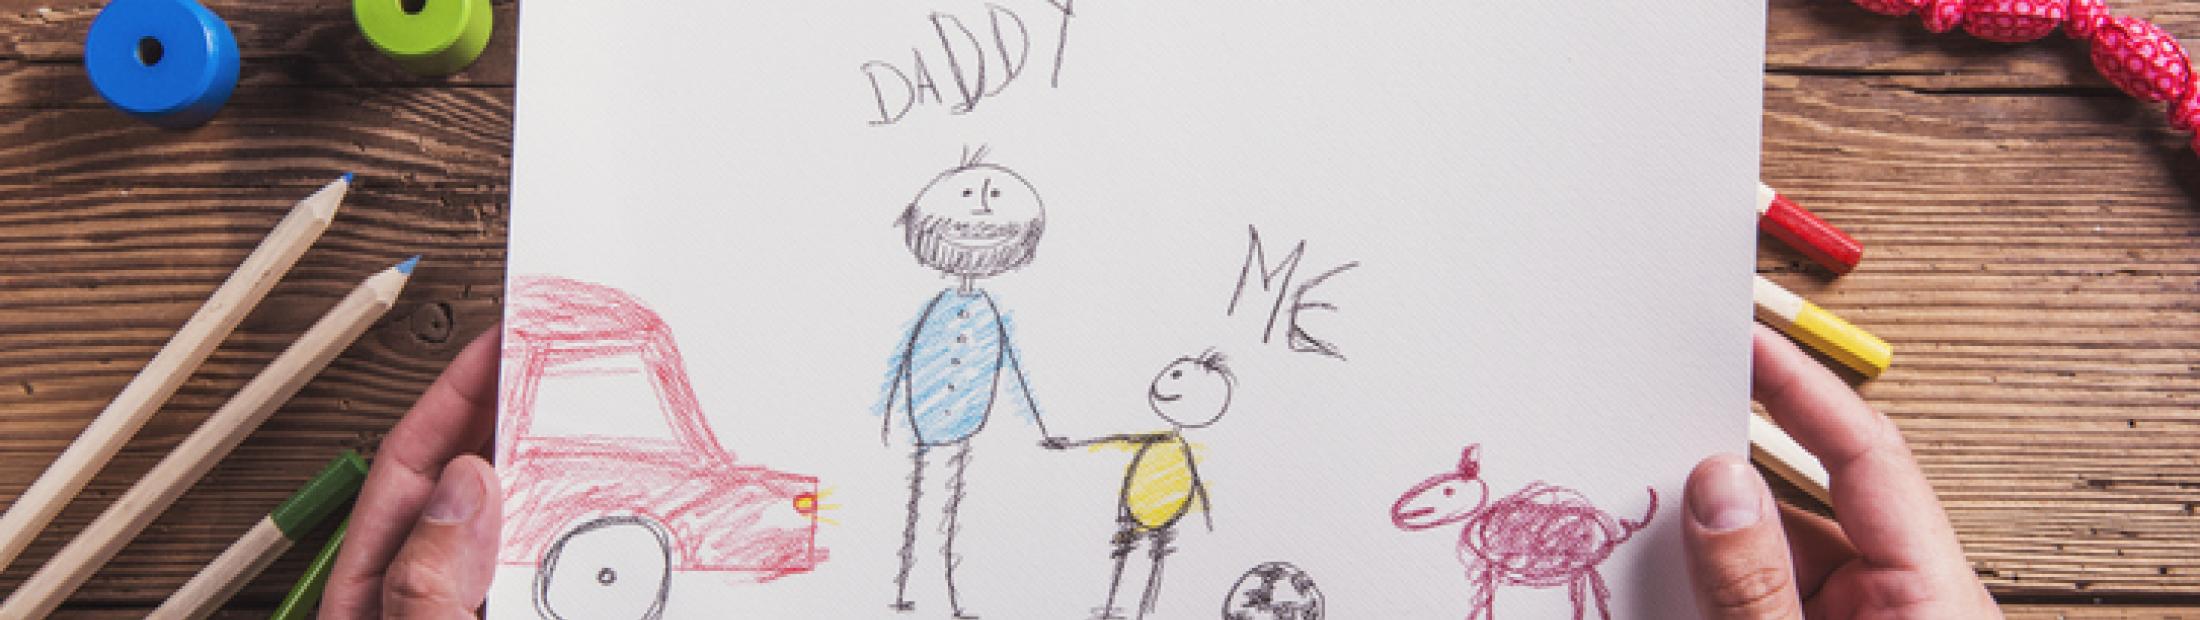 Día del padre: dibujos y mensajes para celebrar esta fecha